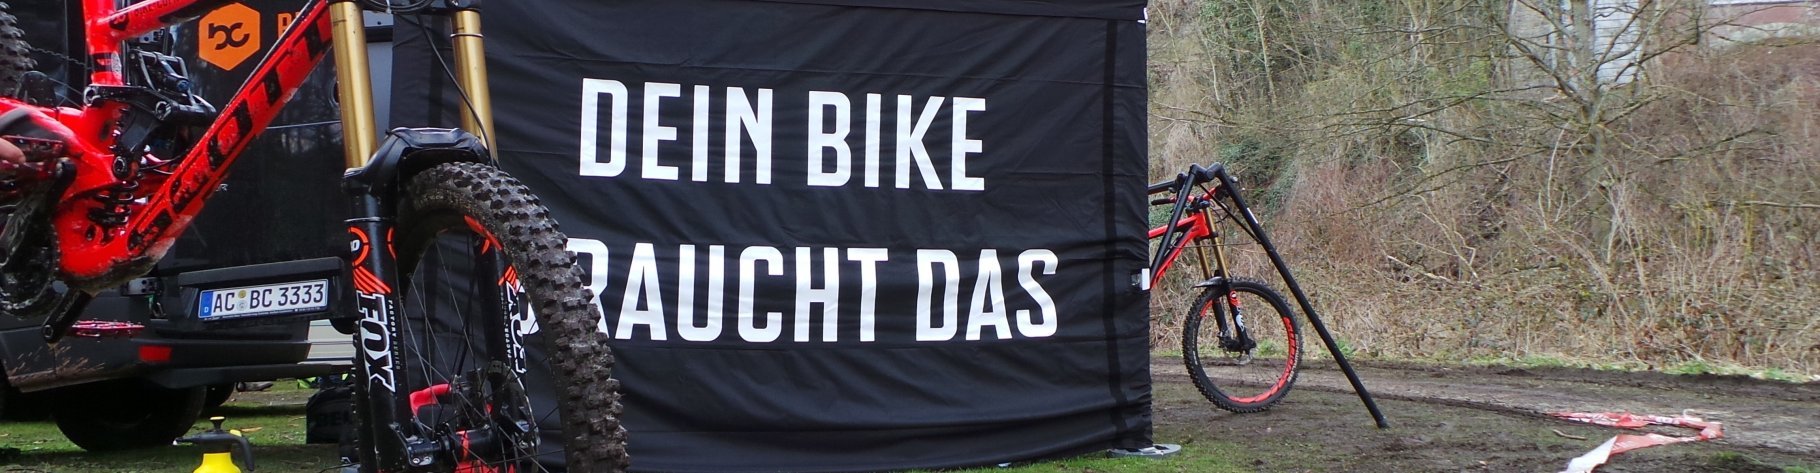 Dein bike braucht das Schriftzug auf bikecomponents pavillion